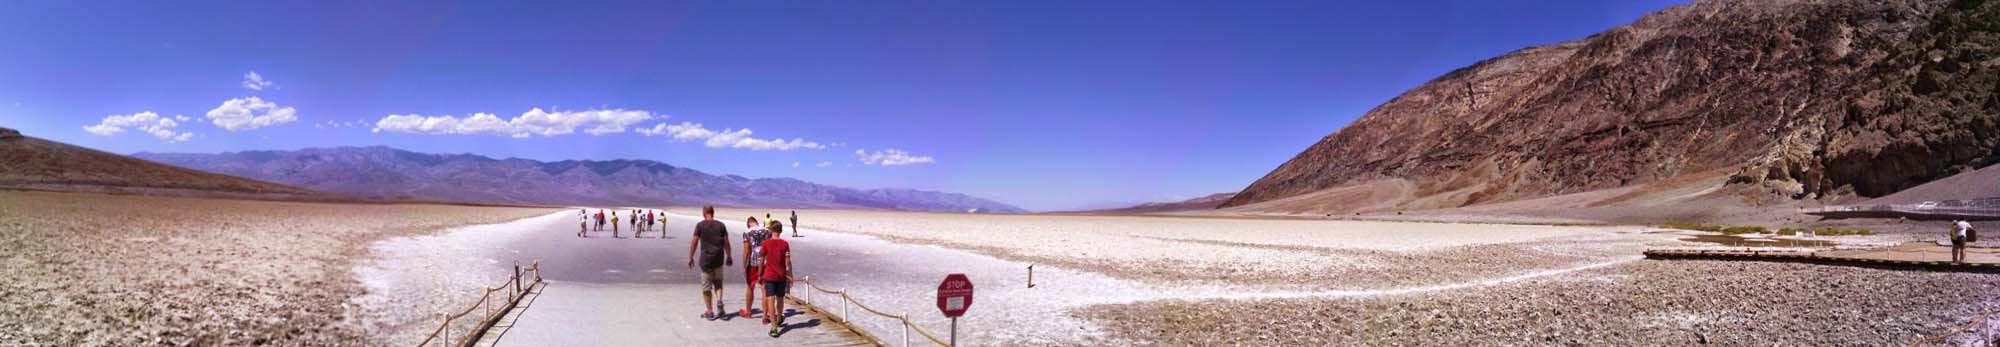 USA, Kalifornie, Death Valley, Badwater Basin